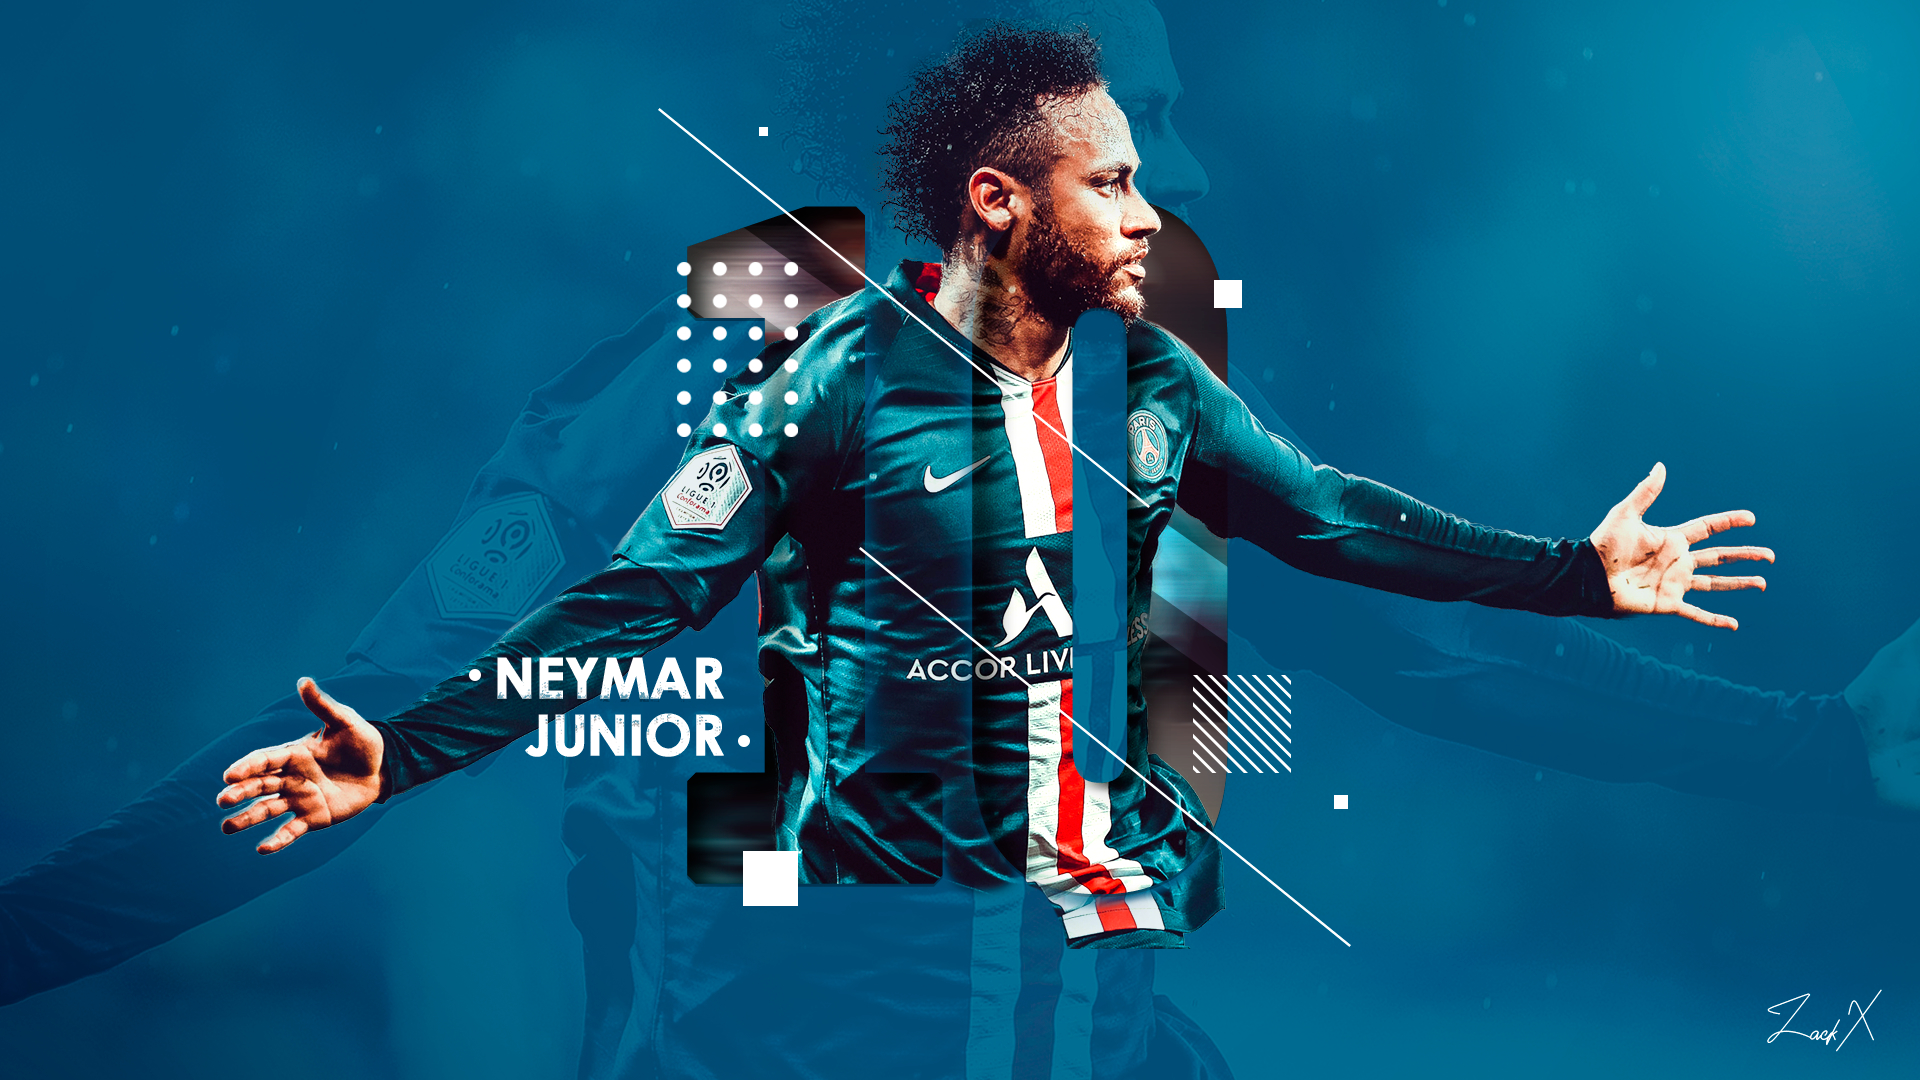 1280x2120 Resolution Neymar HD Brazil 2021 iPhone 6 plus Wallpaper   Wallpapers Den